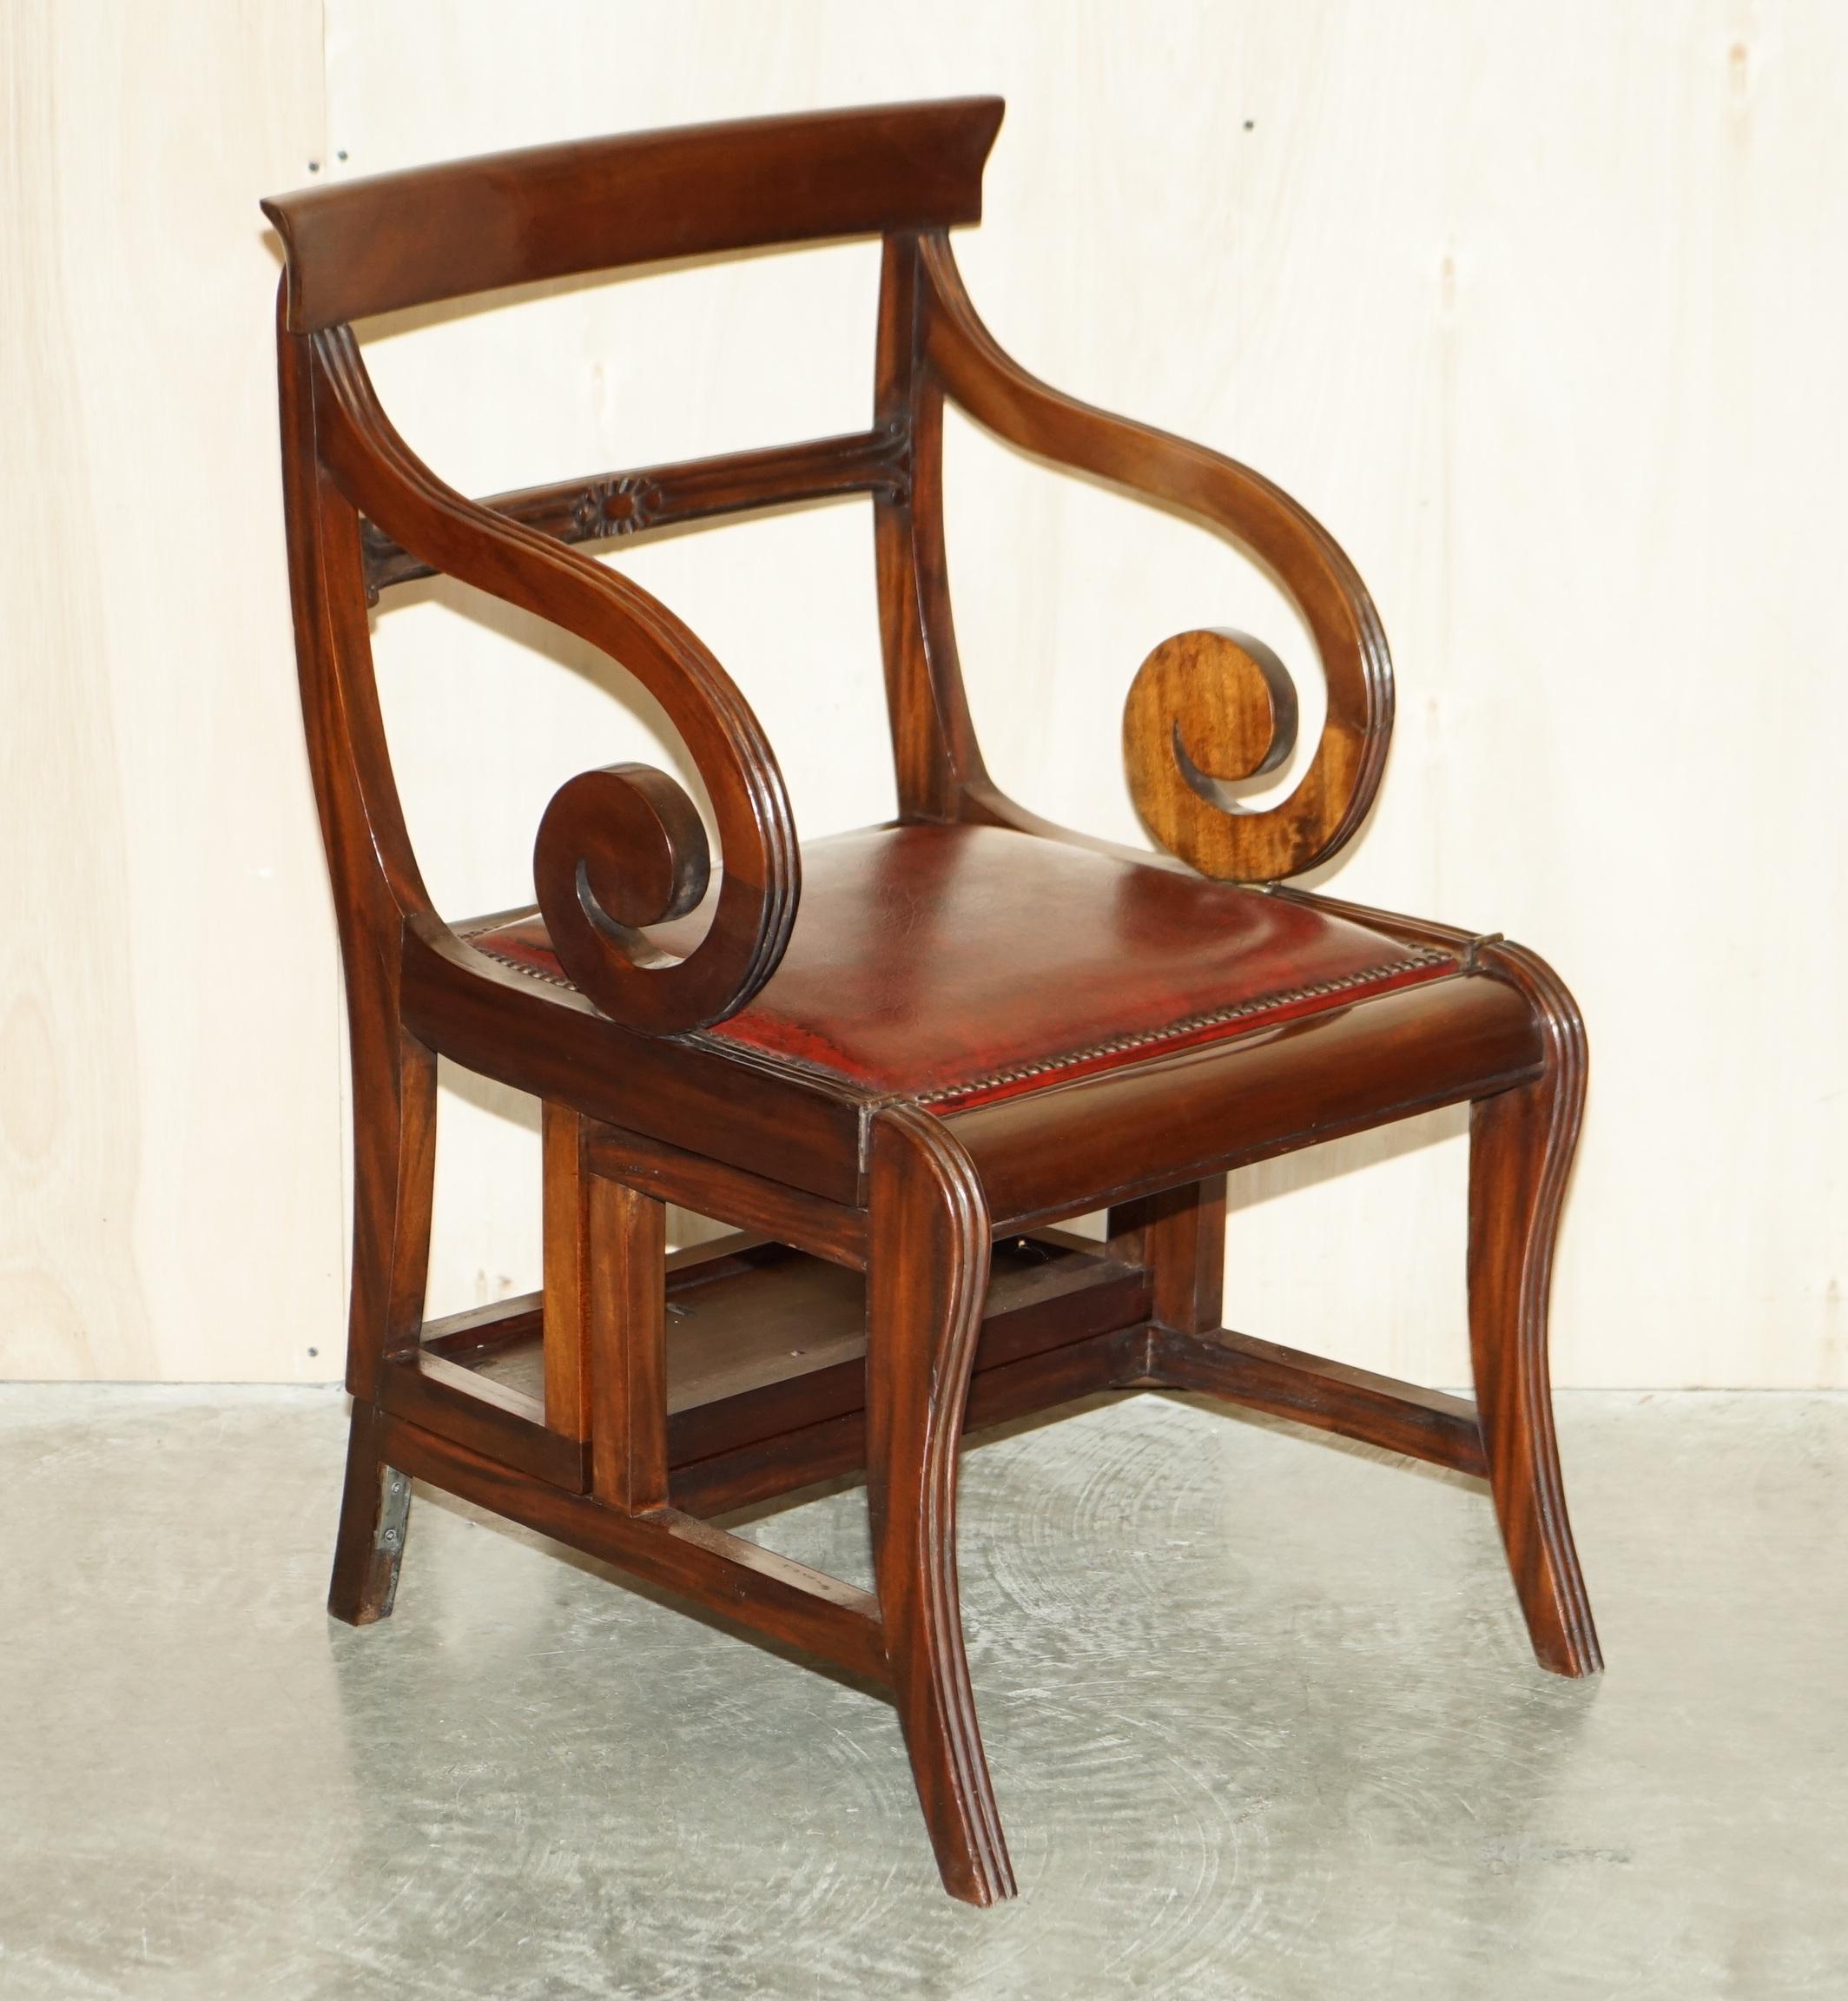 Nous sommes ravis d'offrir ce très grand fauteuil métamorphique de collection entièrement restauré, de style Regency, datant d'environ 1810-1820, qui se transforme en escalier de bibliothèque d'après le modèle original du 18e siècle de Gillows of